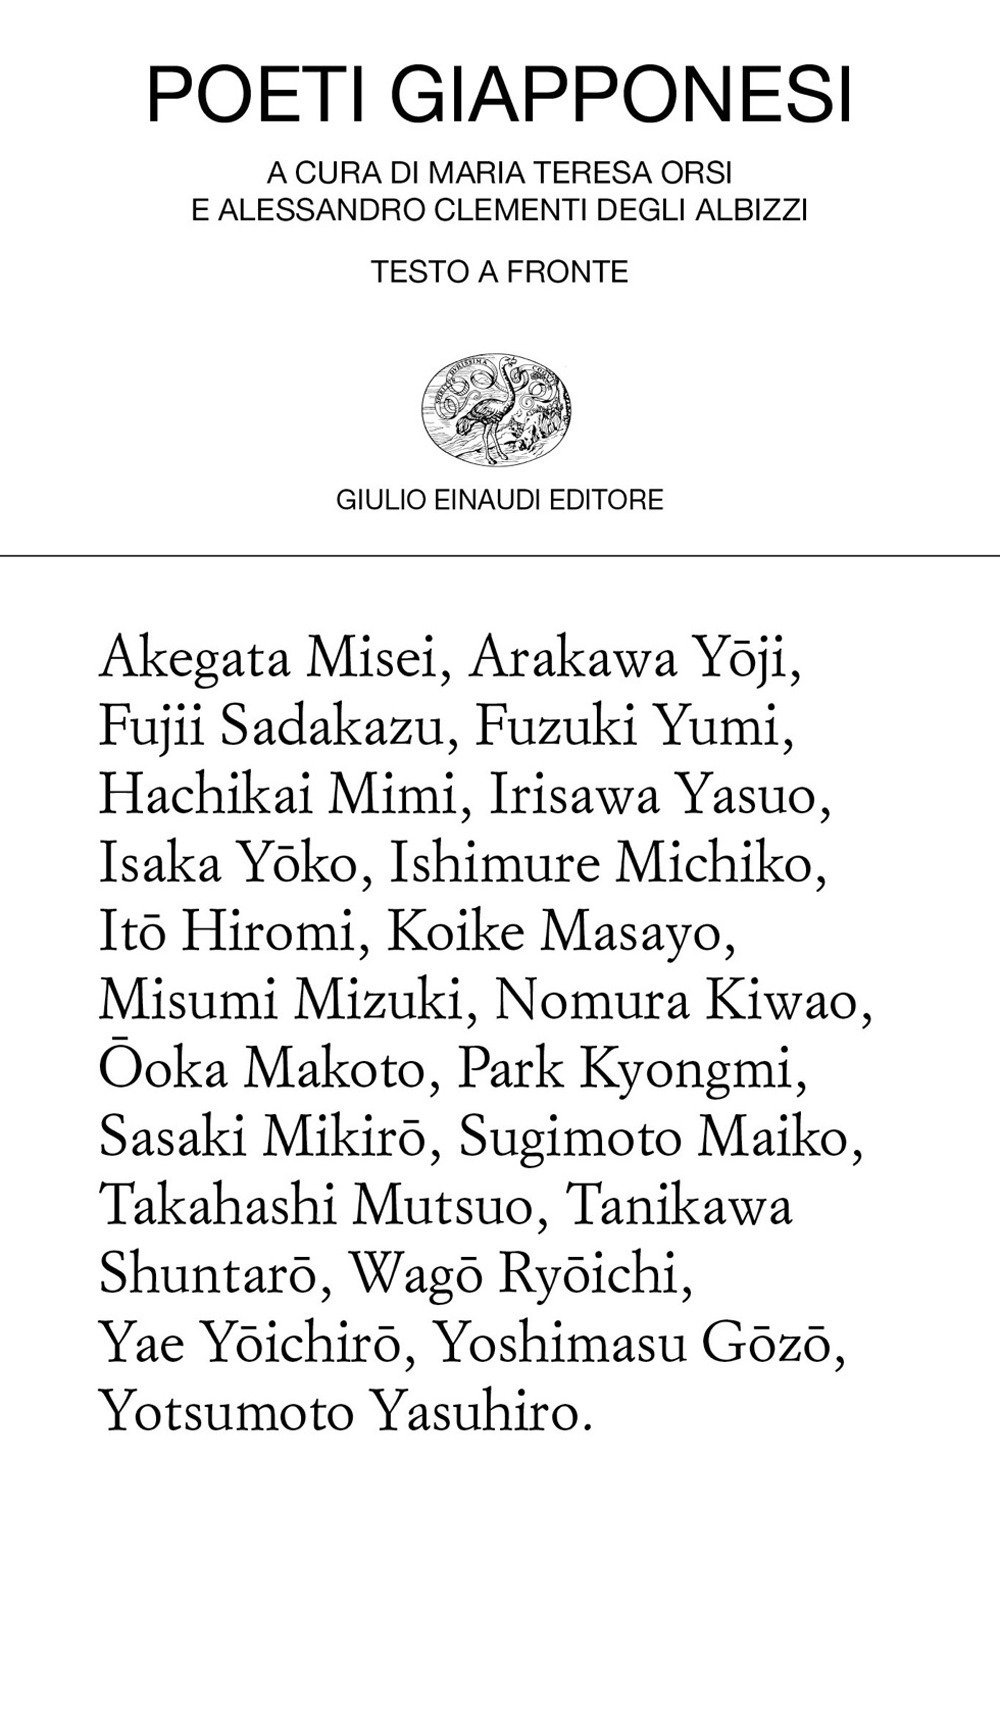 Libri Poeti Giapponesi NUOVO SIGILLATO, EDIZIONE DEL 12/05/2020 SUBITO DISPONIBILE